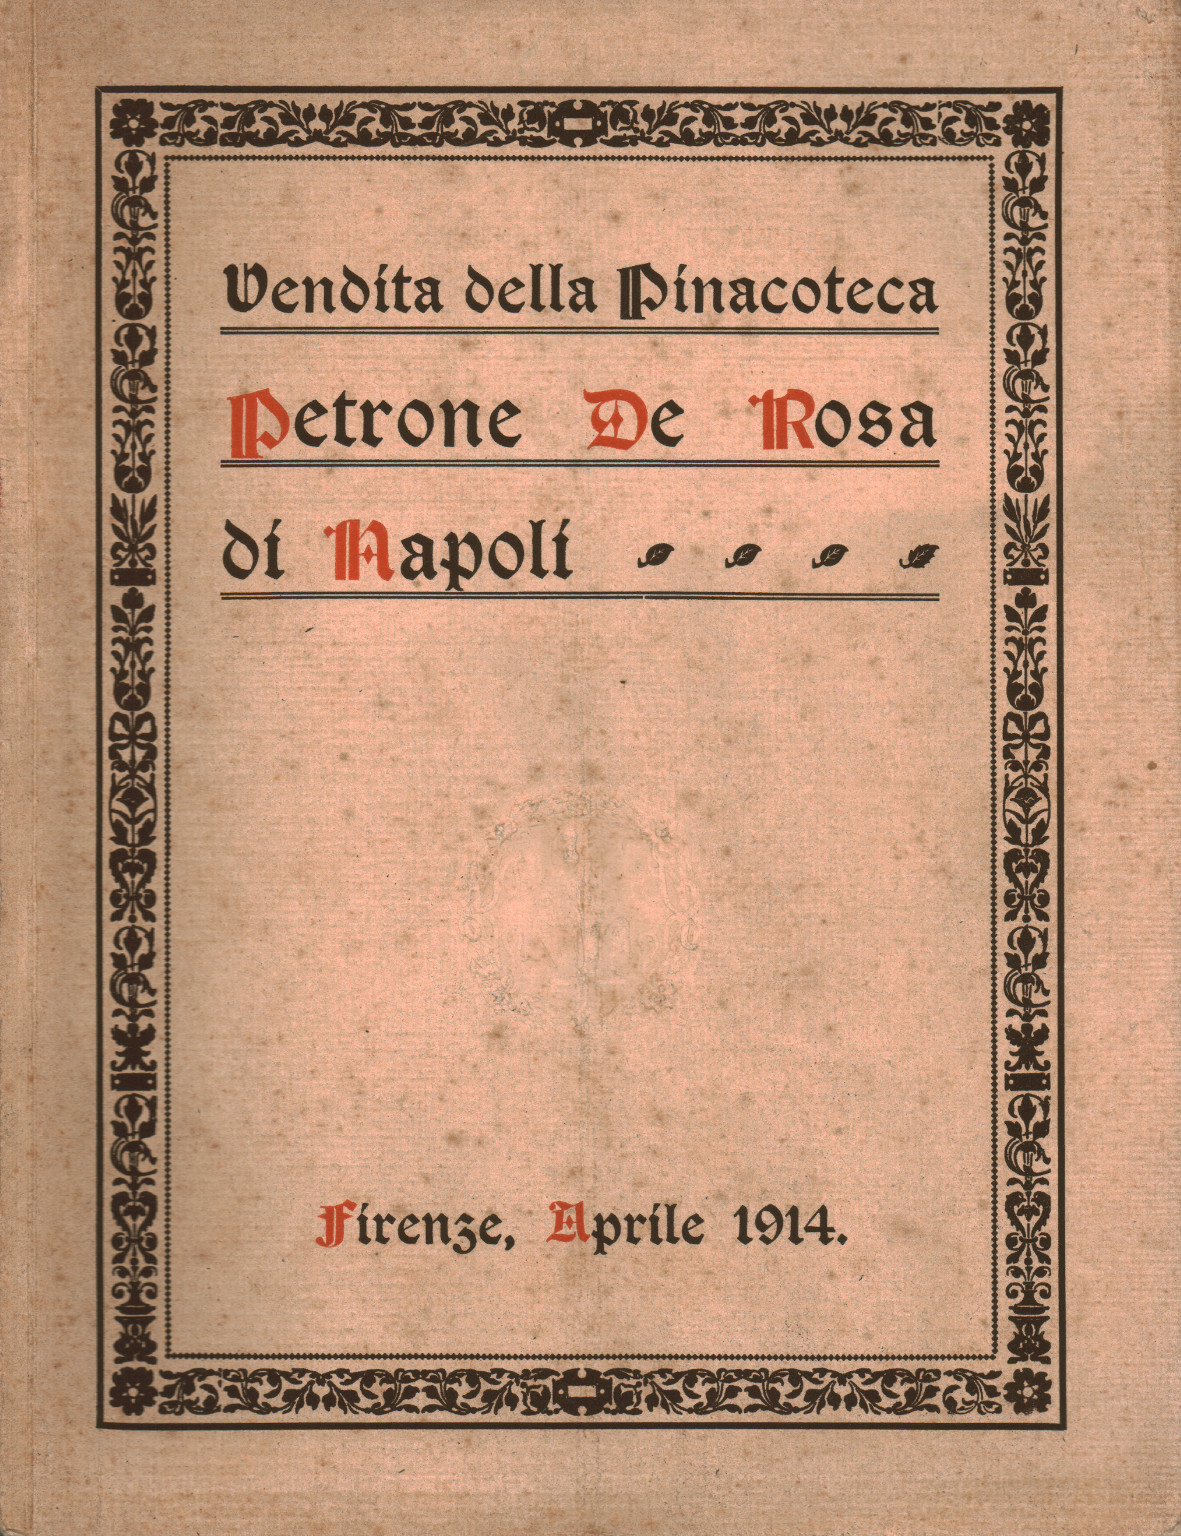 Vendita della Pinacoteca Petrone De Rosa di Napoli, s.a.